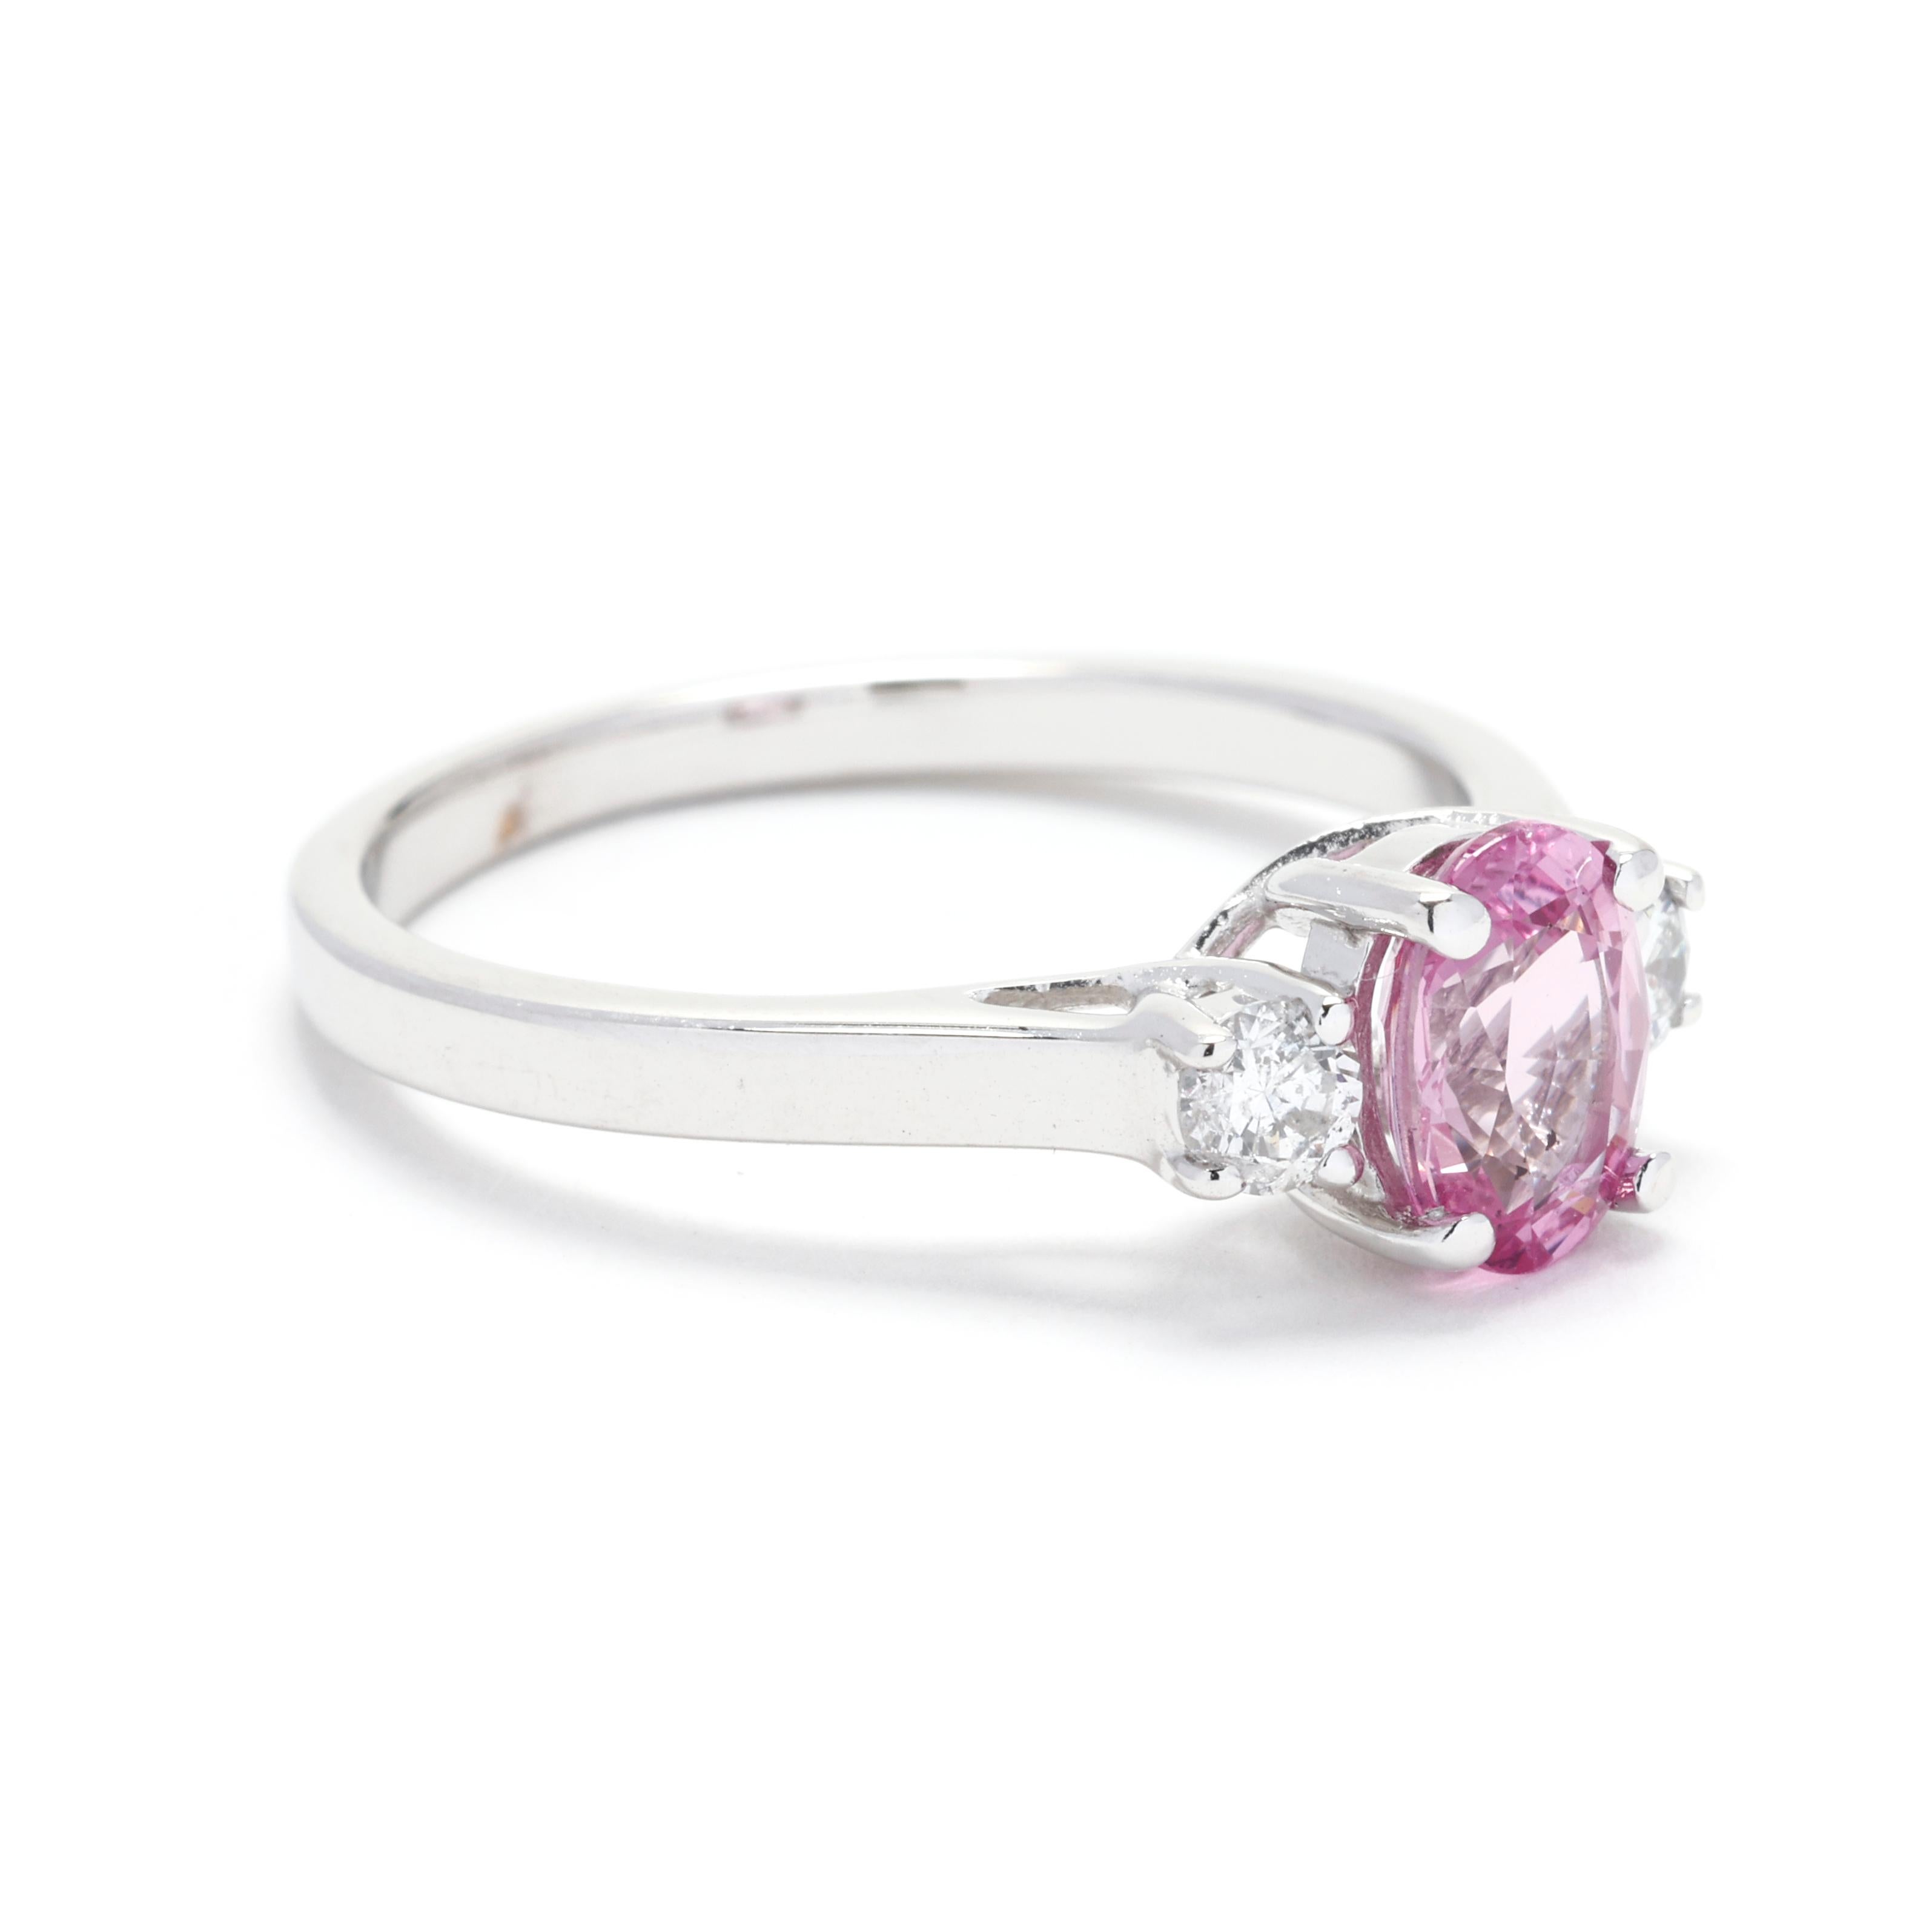 Setzen Sie ein Zeichen mit diesem exquisiten 3-Stein-Ring mit 1,36 ct Diamant und rosa Saphir. Dieser atemberaubende Ring aus 14-karätigem Weißgold besteht aus einem Trio glänzender runder Brillanten, die von leuchtenden rosafarbenen Saphiren